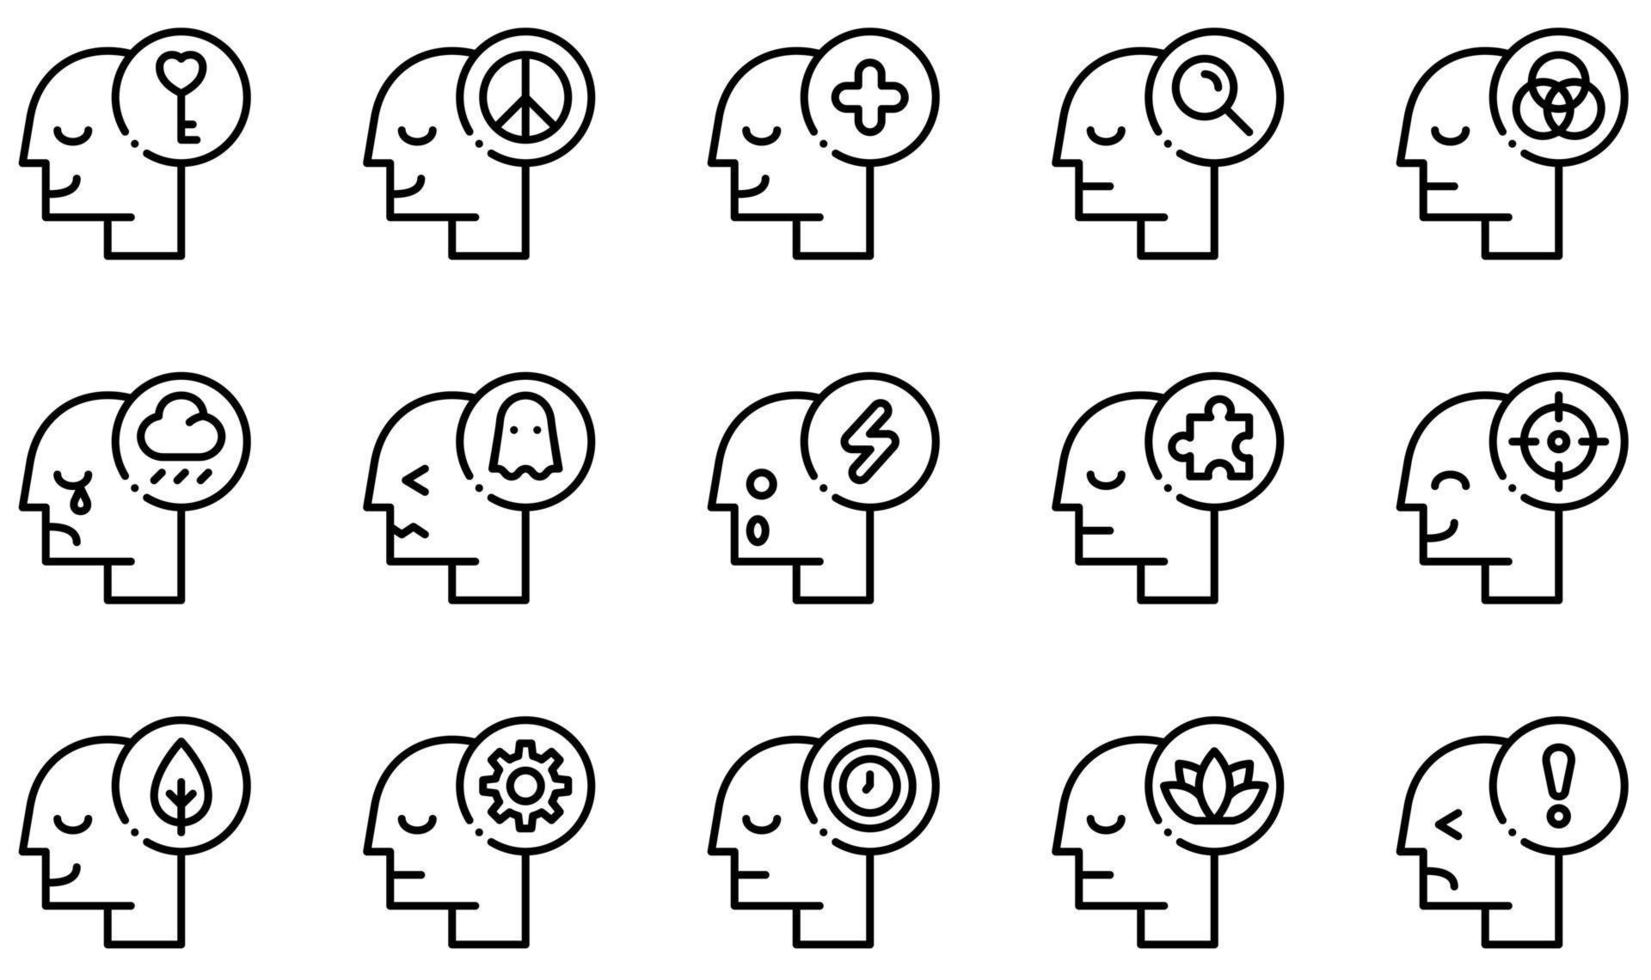 conjunto de ícones vetoriais relacionados à mente humana. contém ícones como mente aberta, positivo, tristeza, medo, choque, tempo e muito mais. vetor